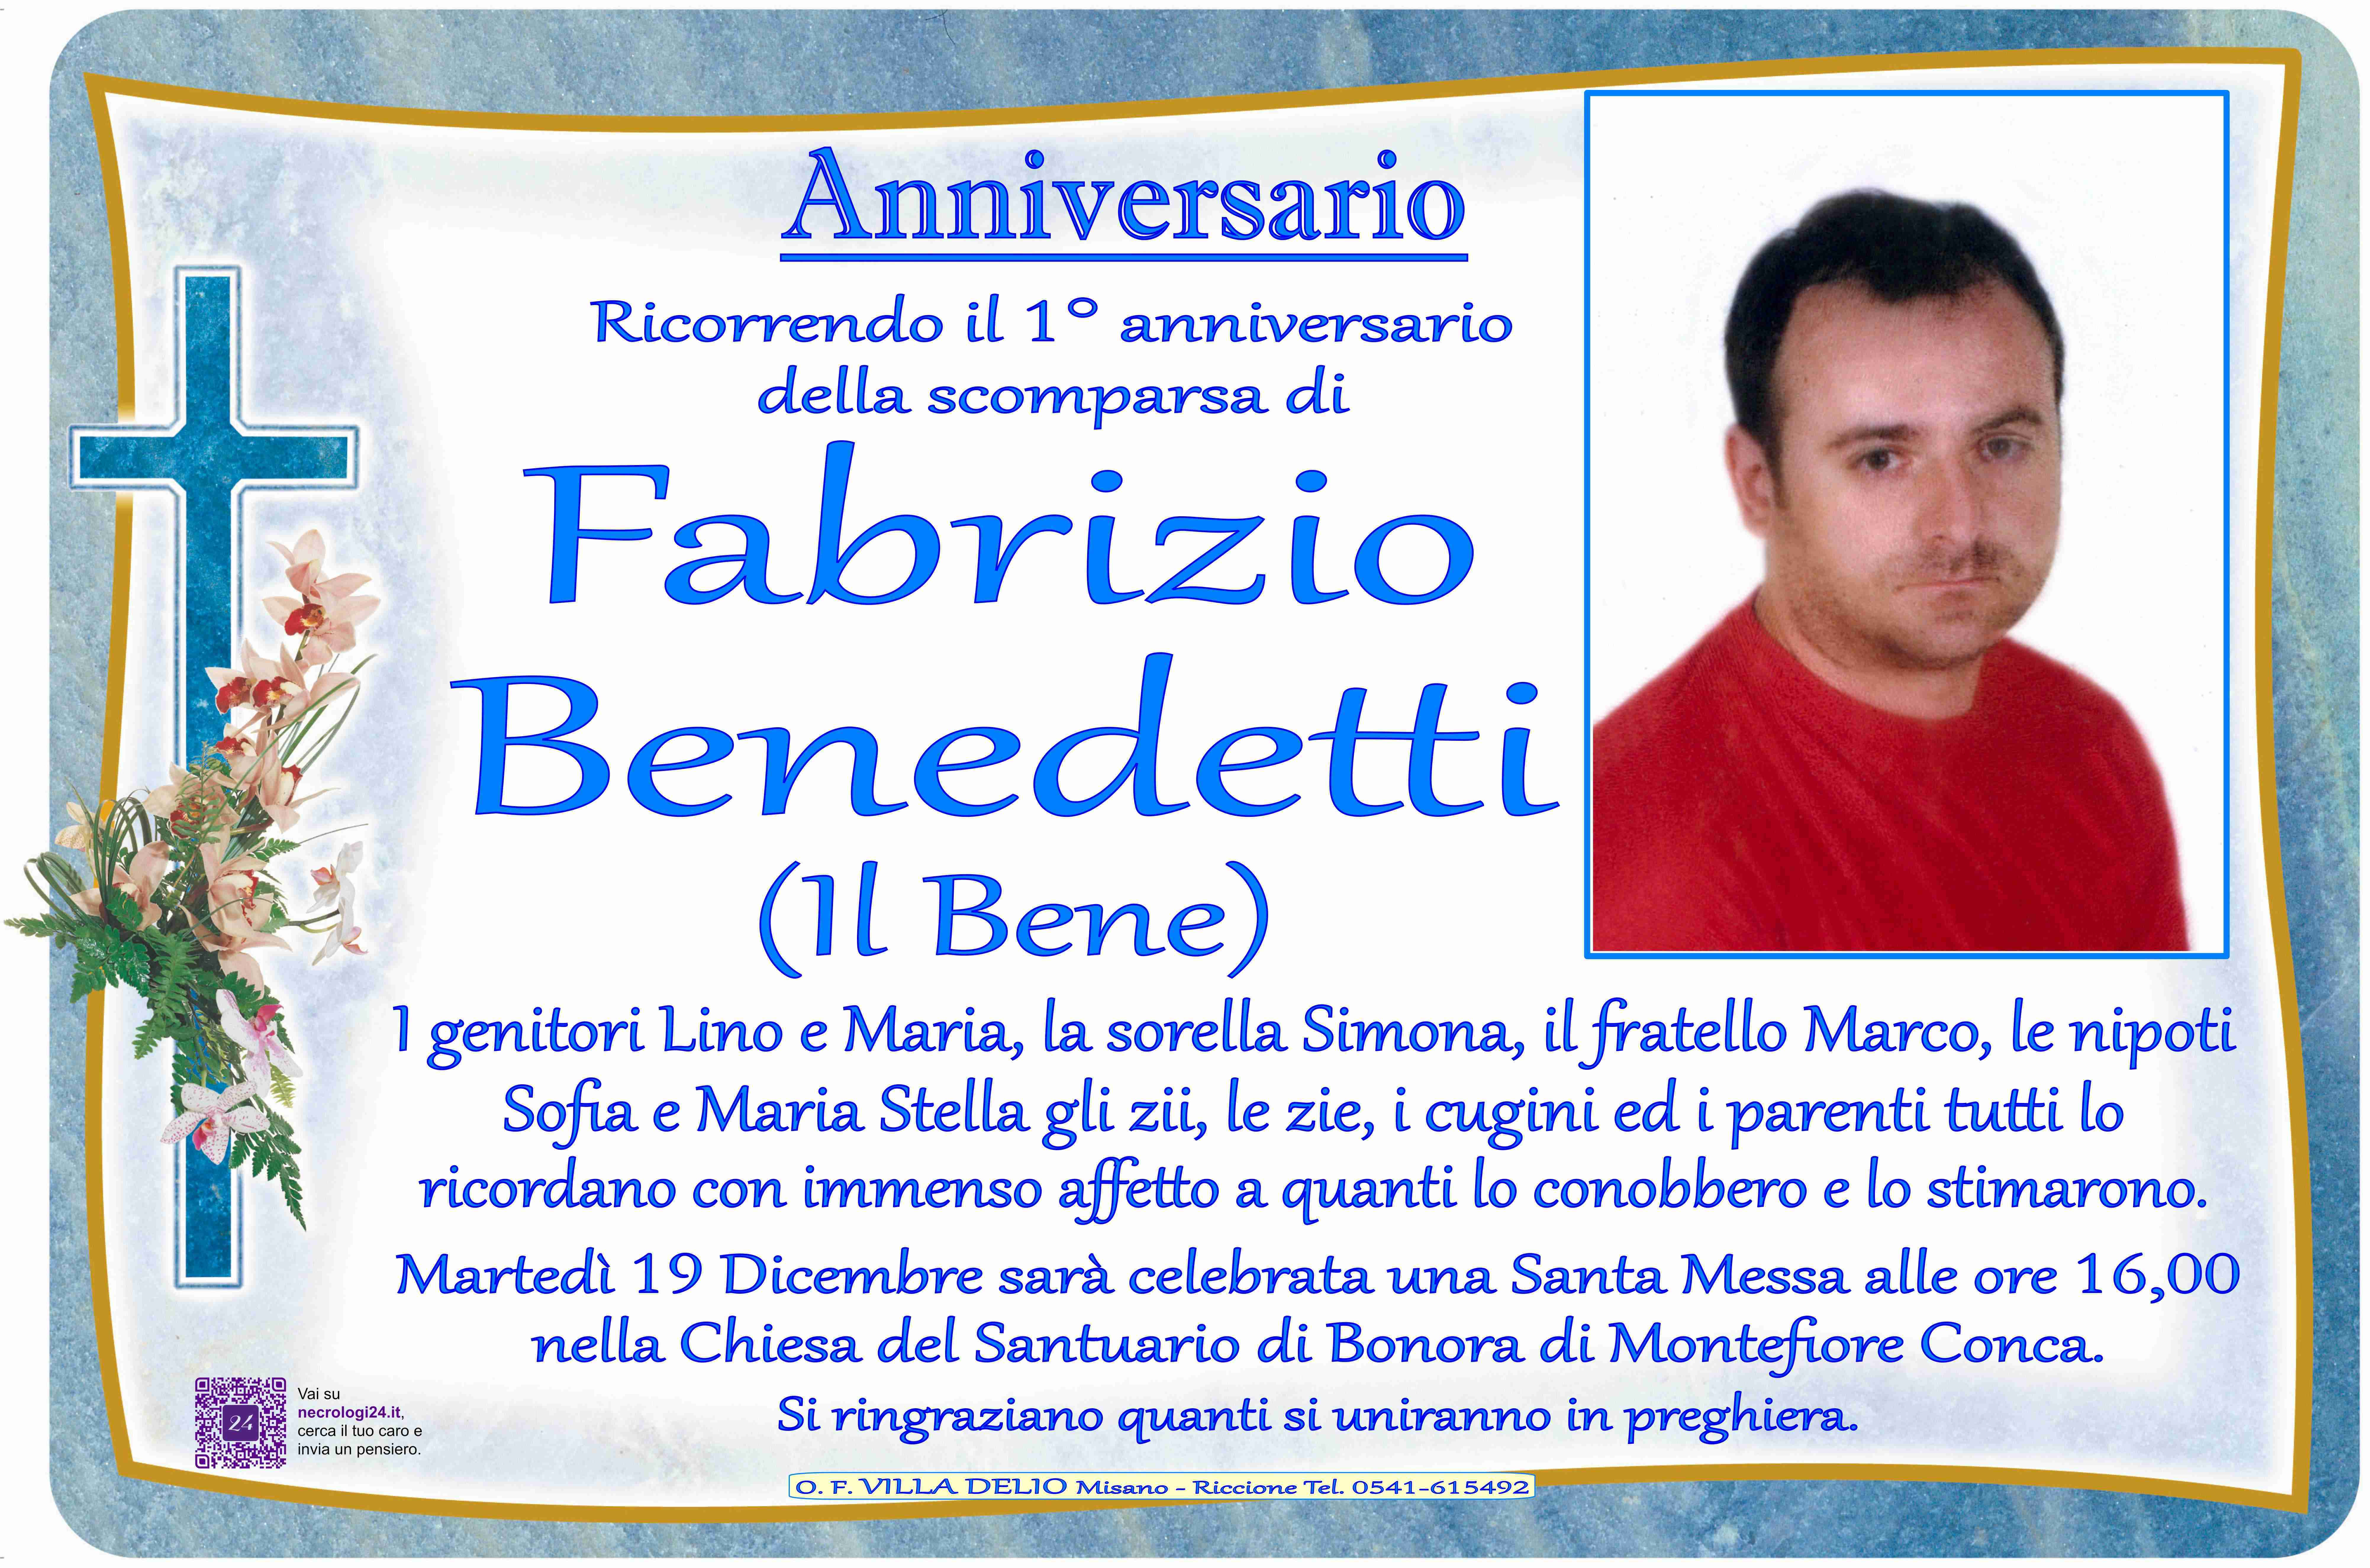 Fabrizio Benedetti